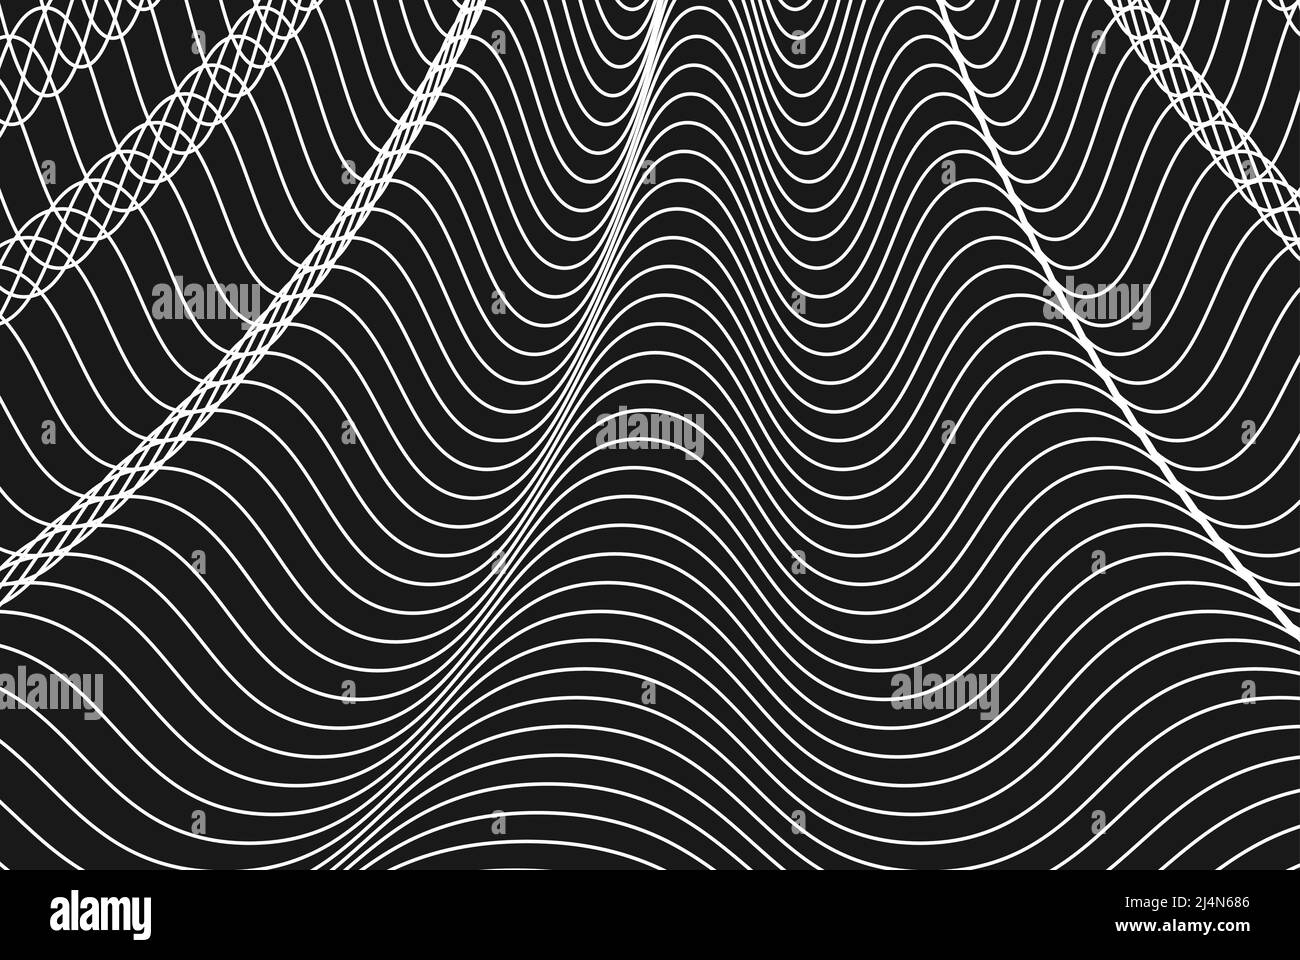 Lignes ondulées blanches sur fond noir, arrière-plan abstrait minimal, toile de fond géométrique à motif de lignes Illustration de Vecteur